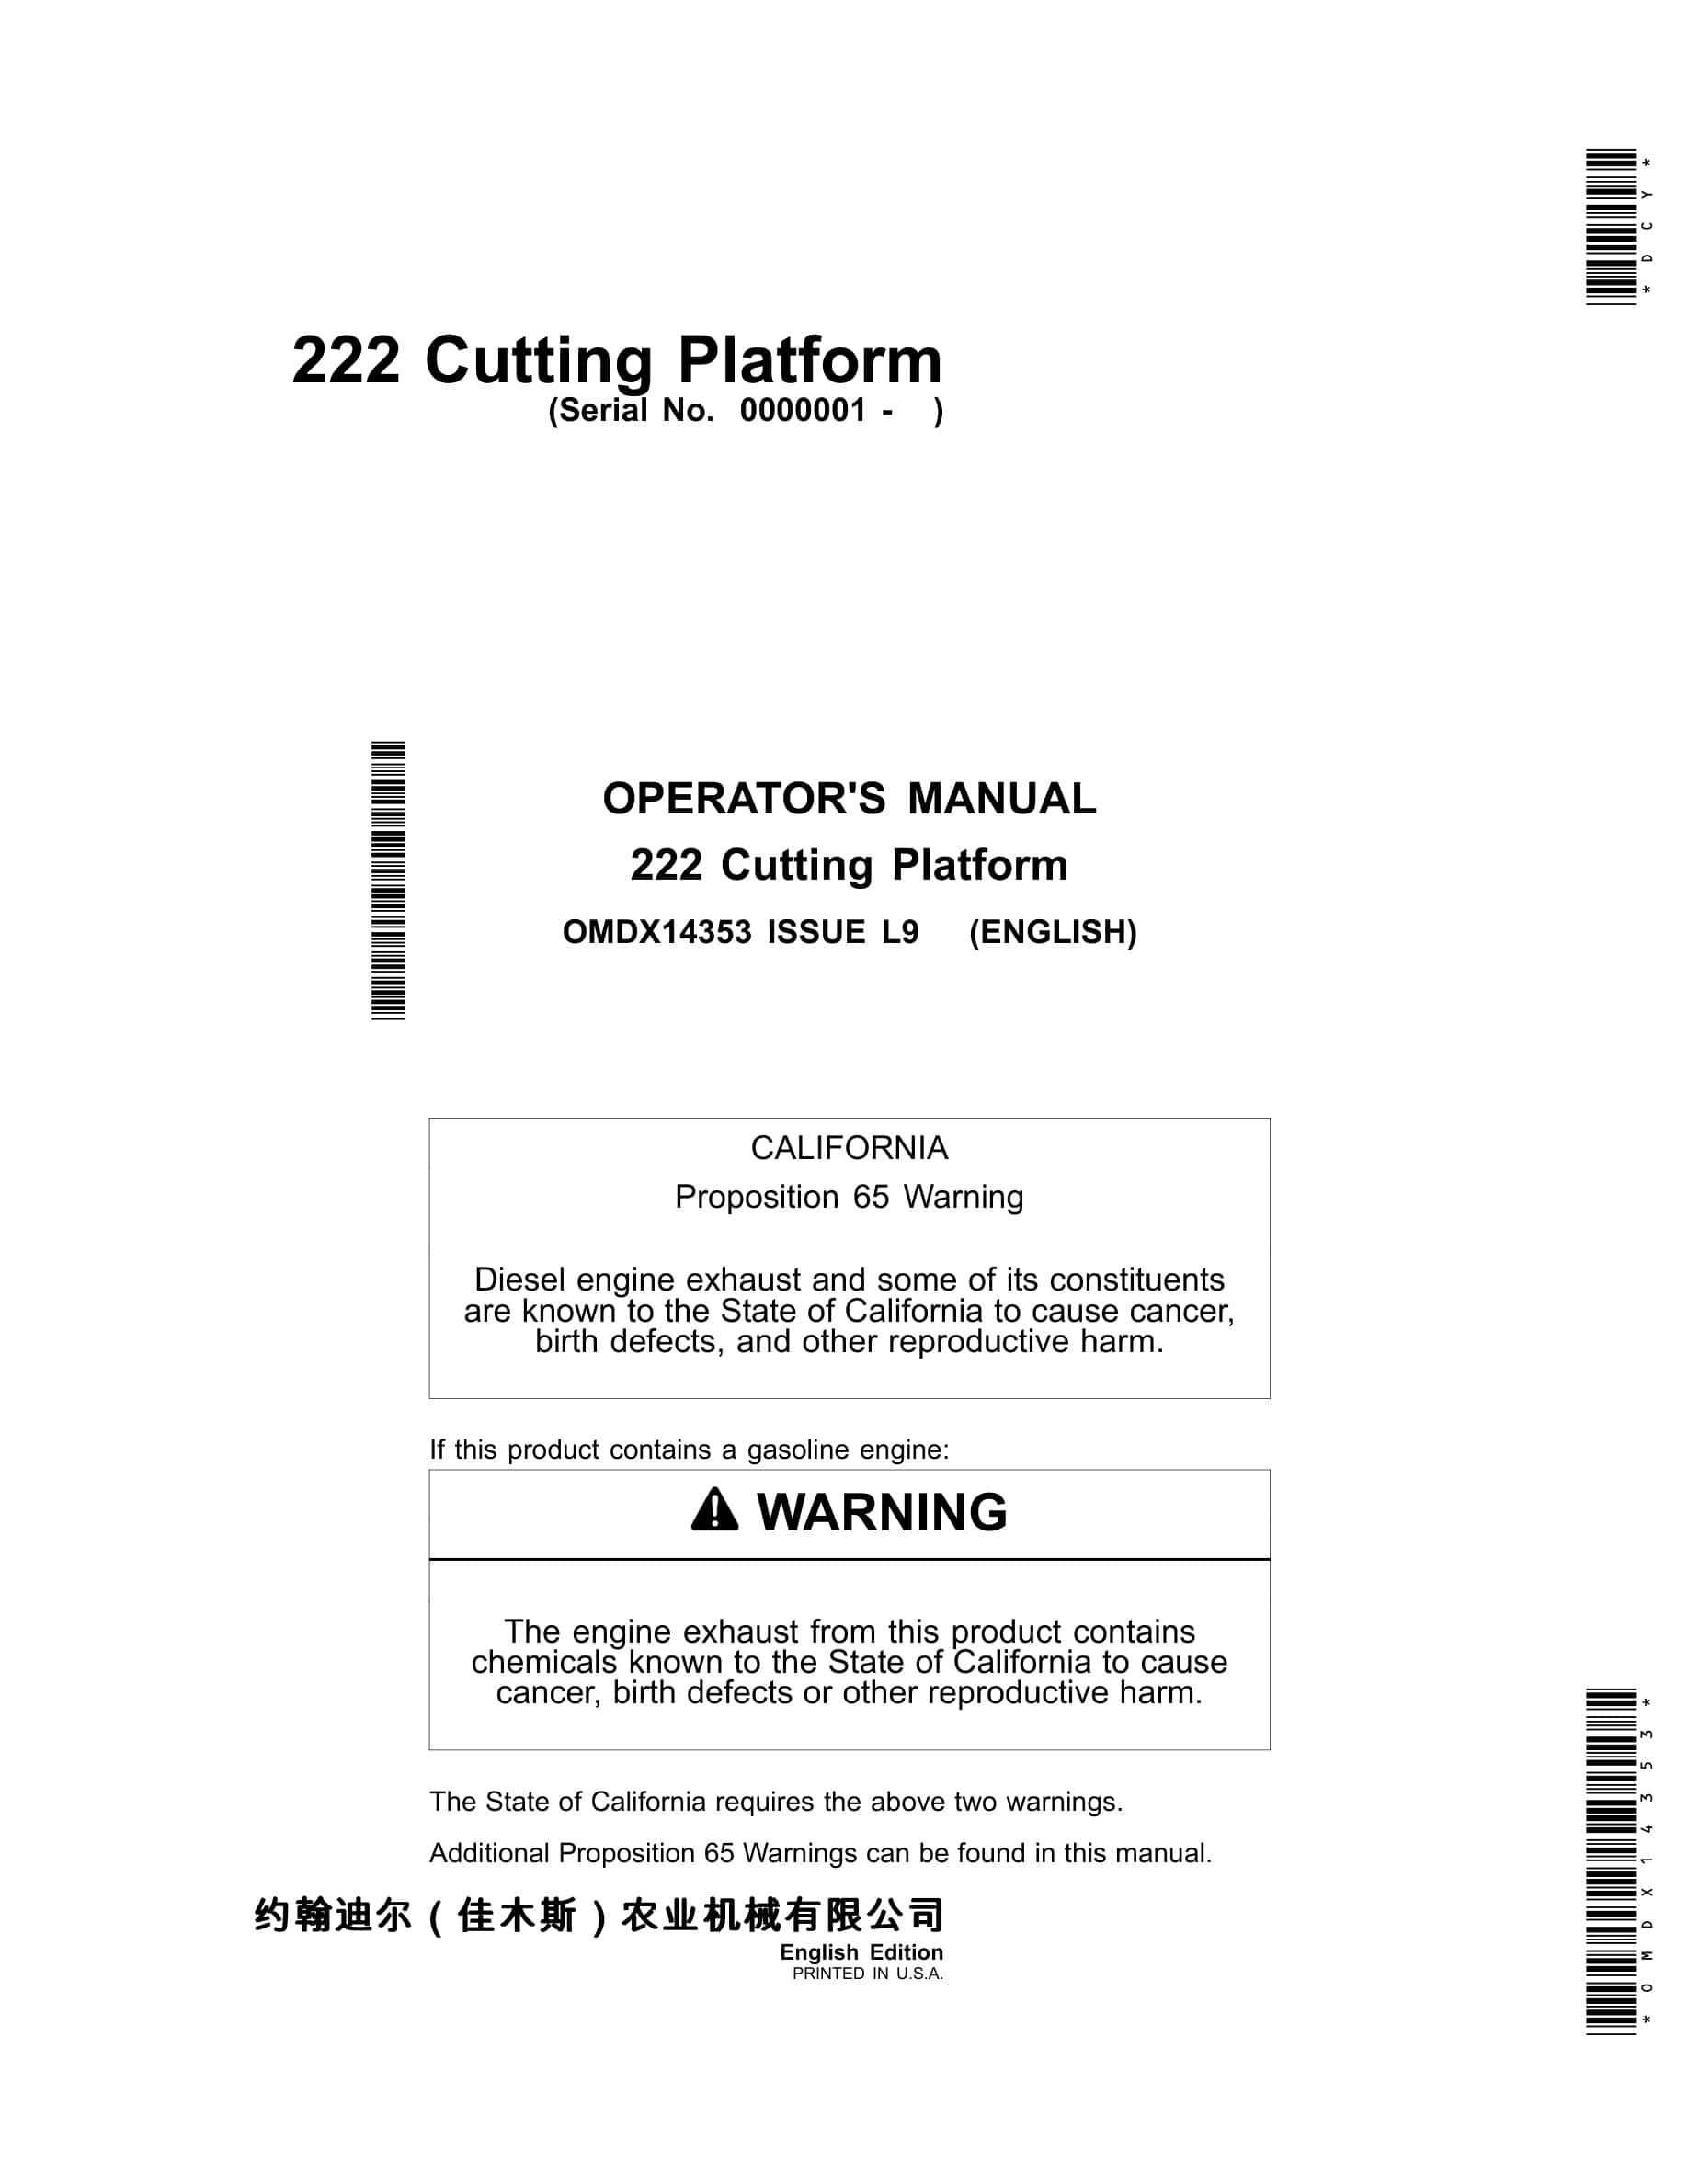 John Deere 222 Cutting Platform Operator Manual OMDX14353-1